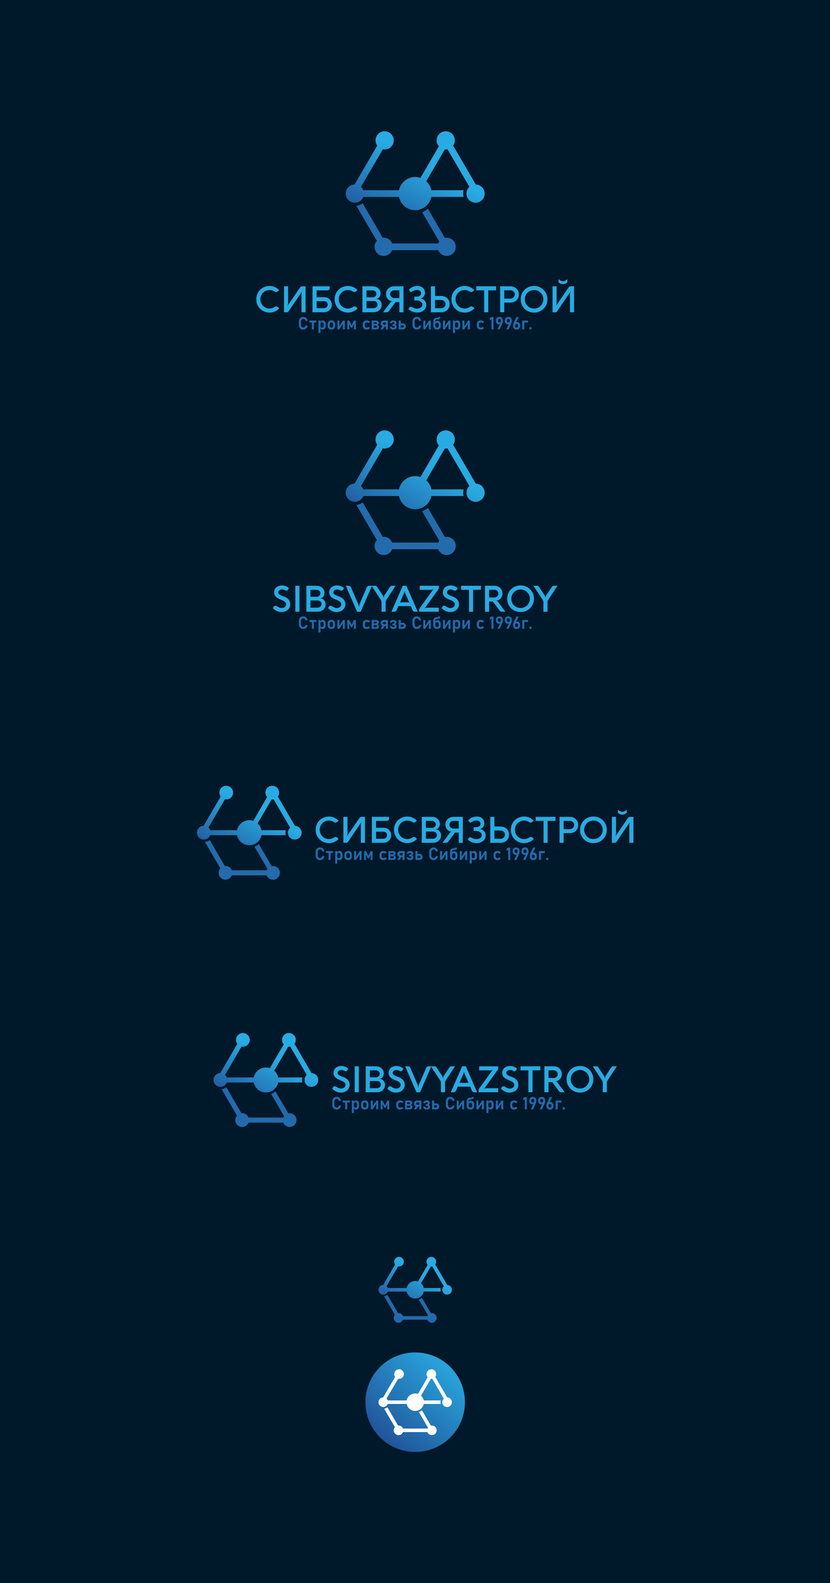 + - Разработка или ребрендинг существующего логотипа компании Сибсвязьстрой